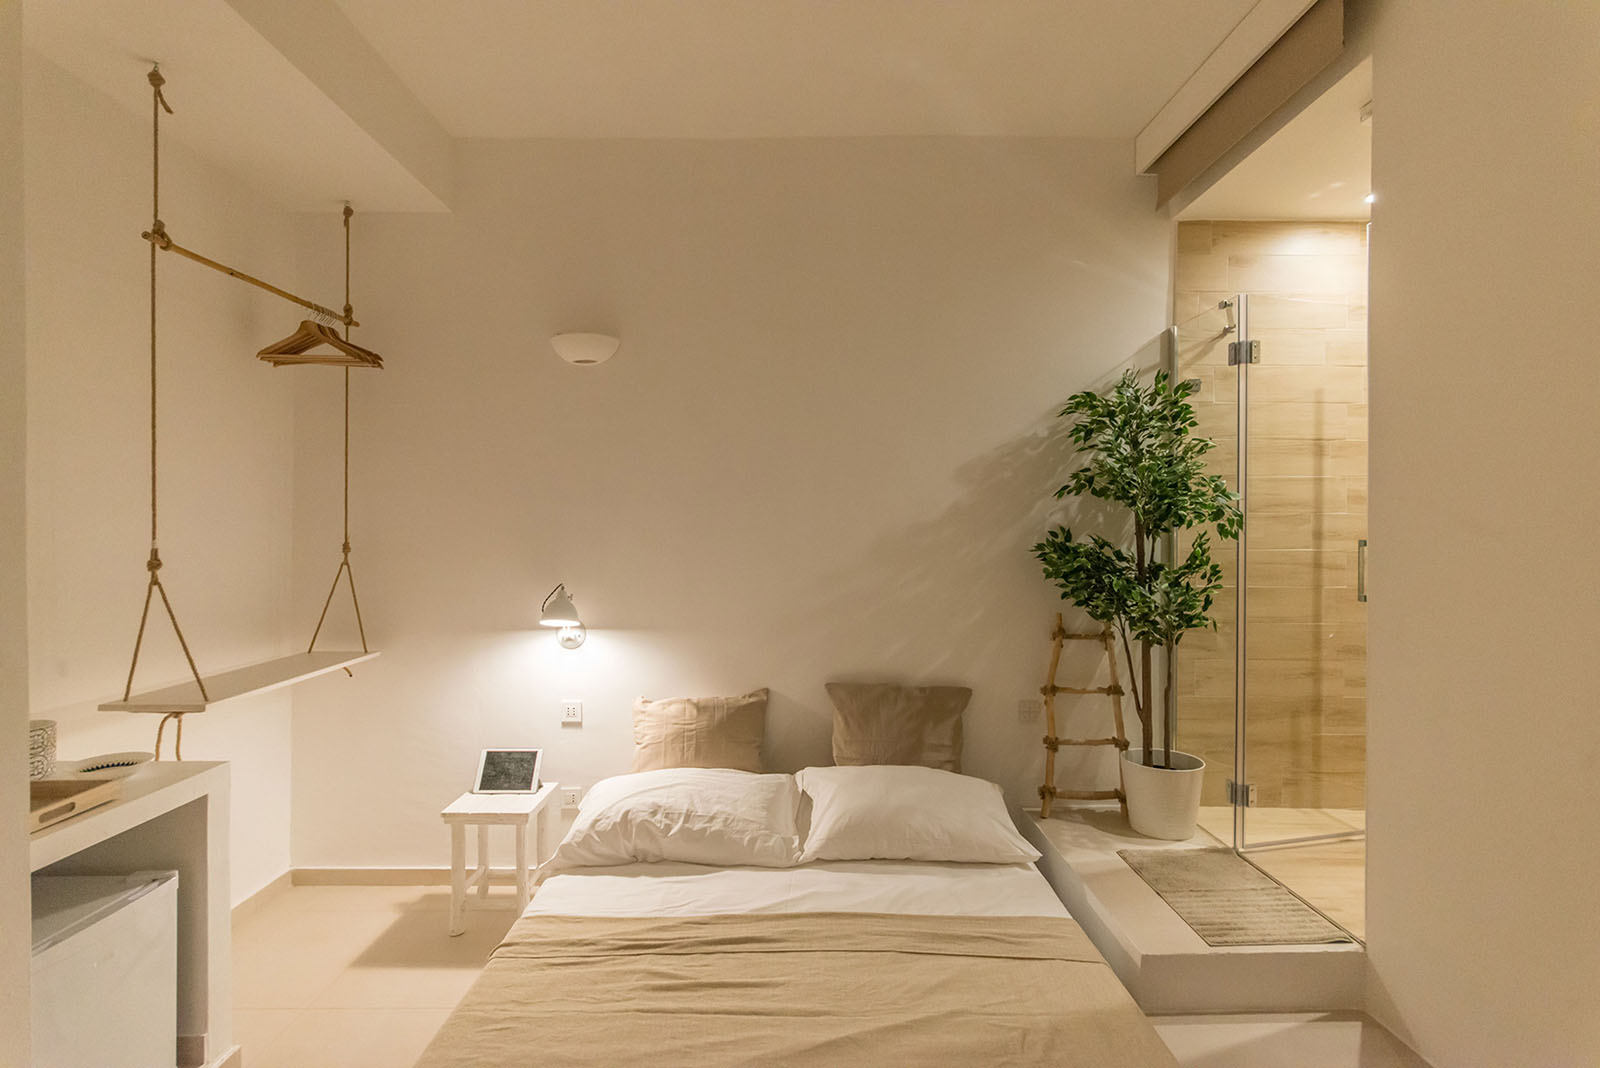 1 bed and breakfast agropoli progettazione architettonica domotica salerno break for two mare nest room 3 b&b